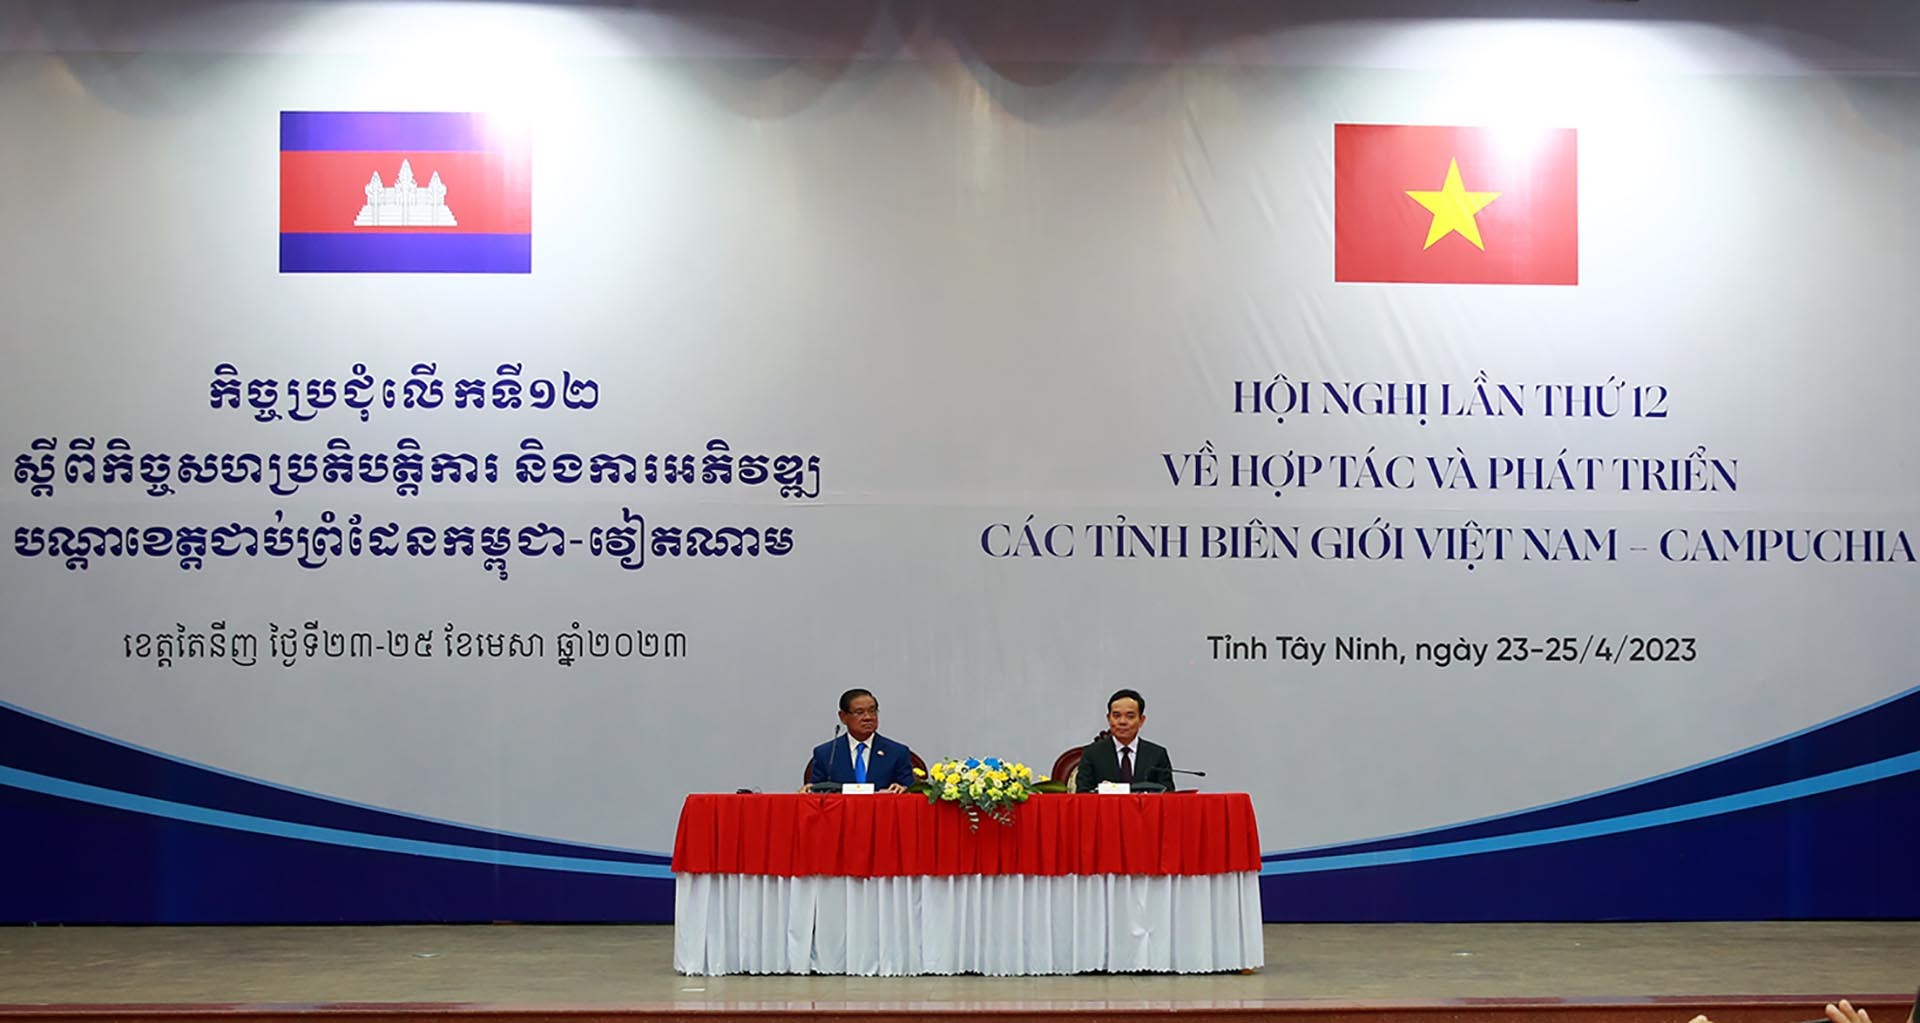 Phó Thủ tướng Trần Lưu Quang và Phó Thủ tướng, Bộ trưởng Bộ Nội vụ Vương quốc Campuchia Samdech Krolahom Sar Kheng đồng chủ trì Hội nghị lần thứ 12 về hợp tác và phát triển các tỉnh biên giới Việt Nam-Campuchia.  (Nguồn: VGP)